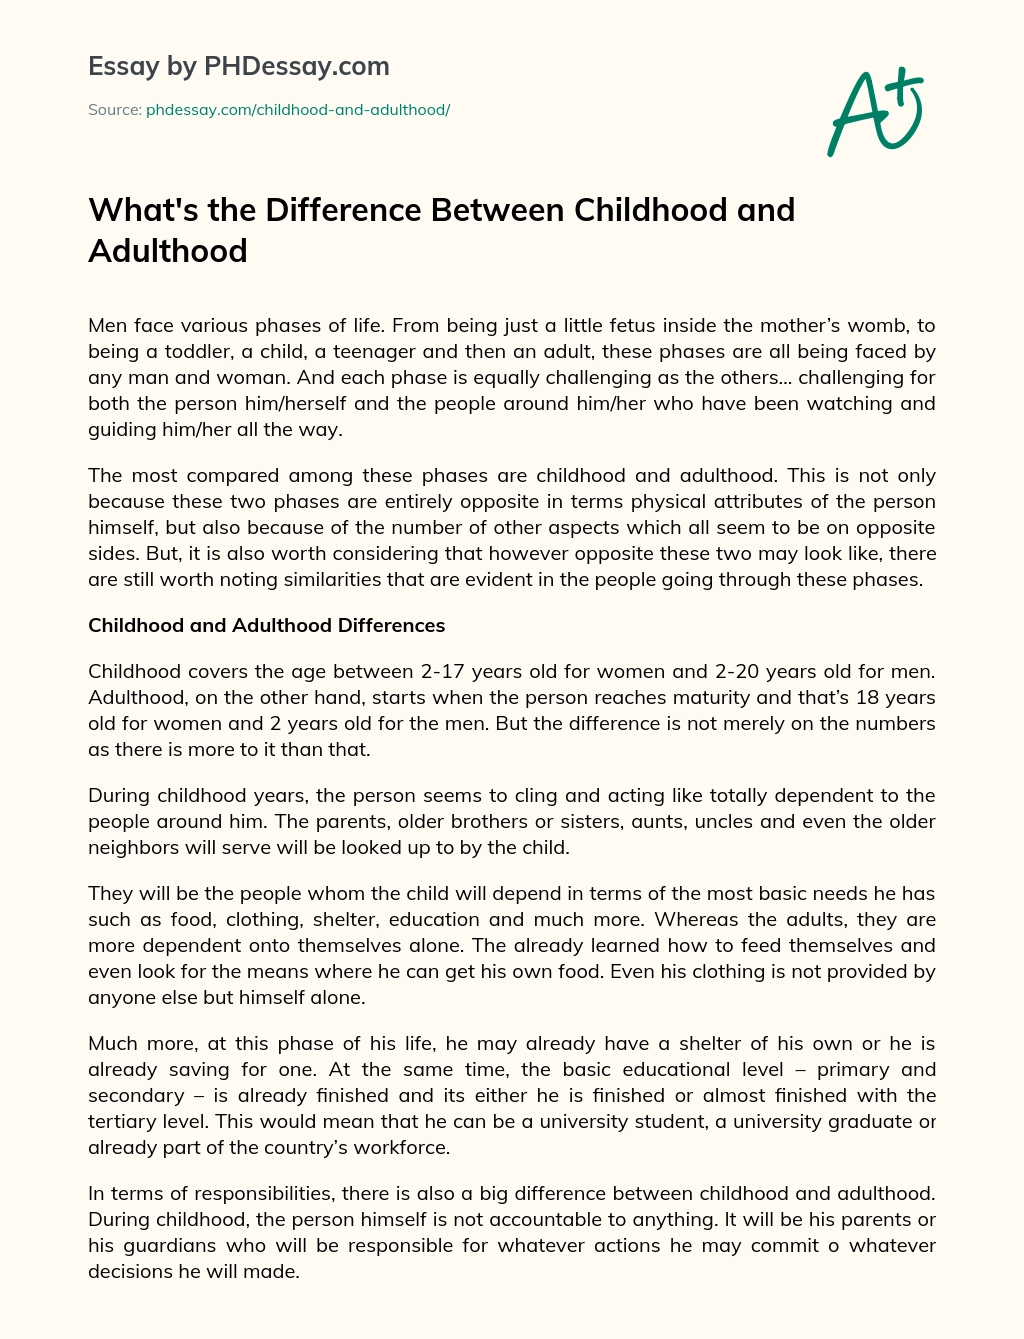 小児期と成人期のエッセイの違いは何ですか